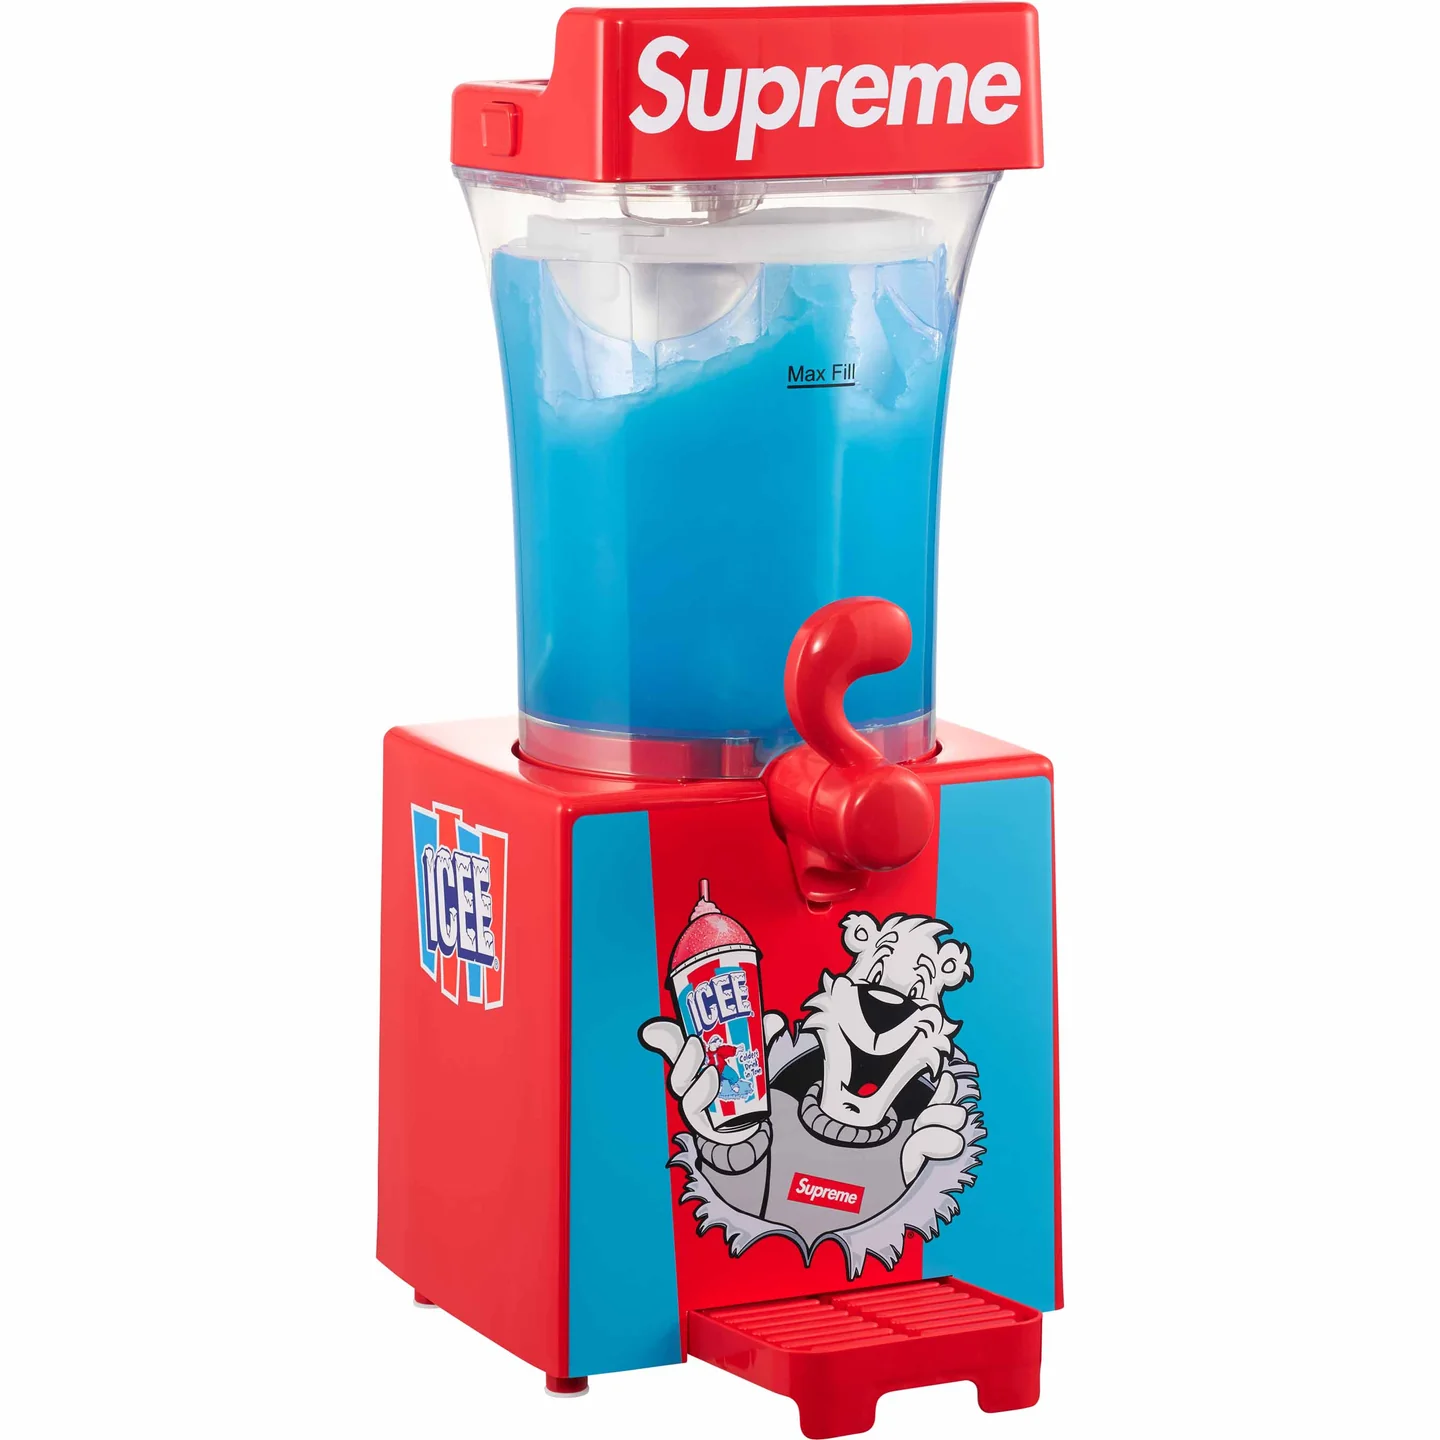 Supreme®/ICEE® Slushie Machine